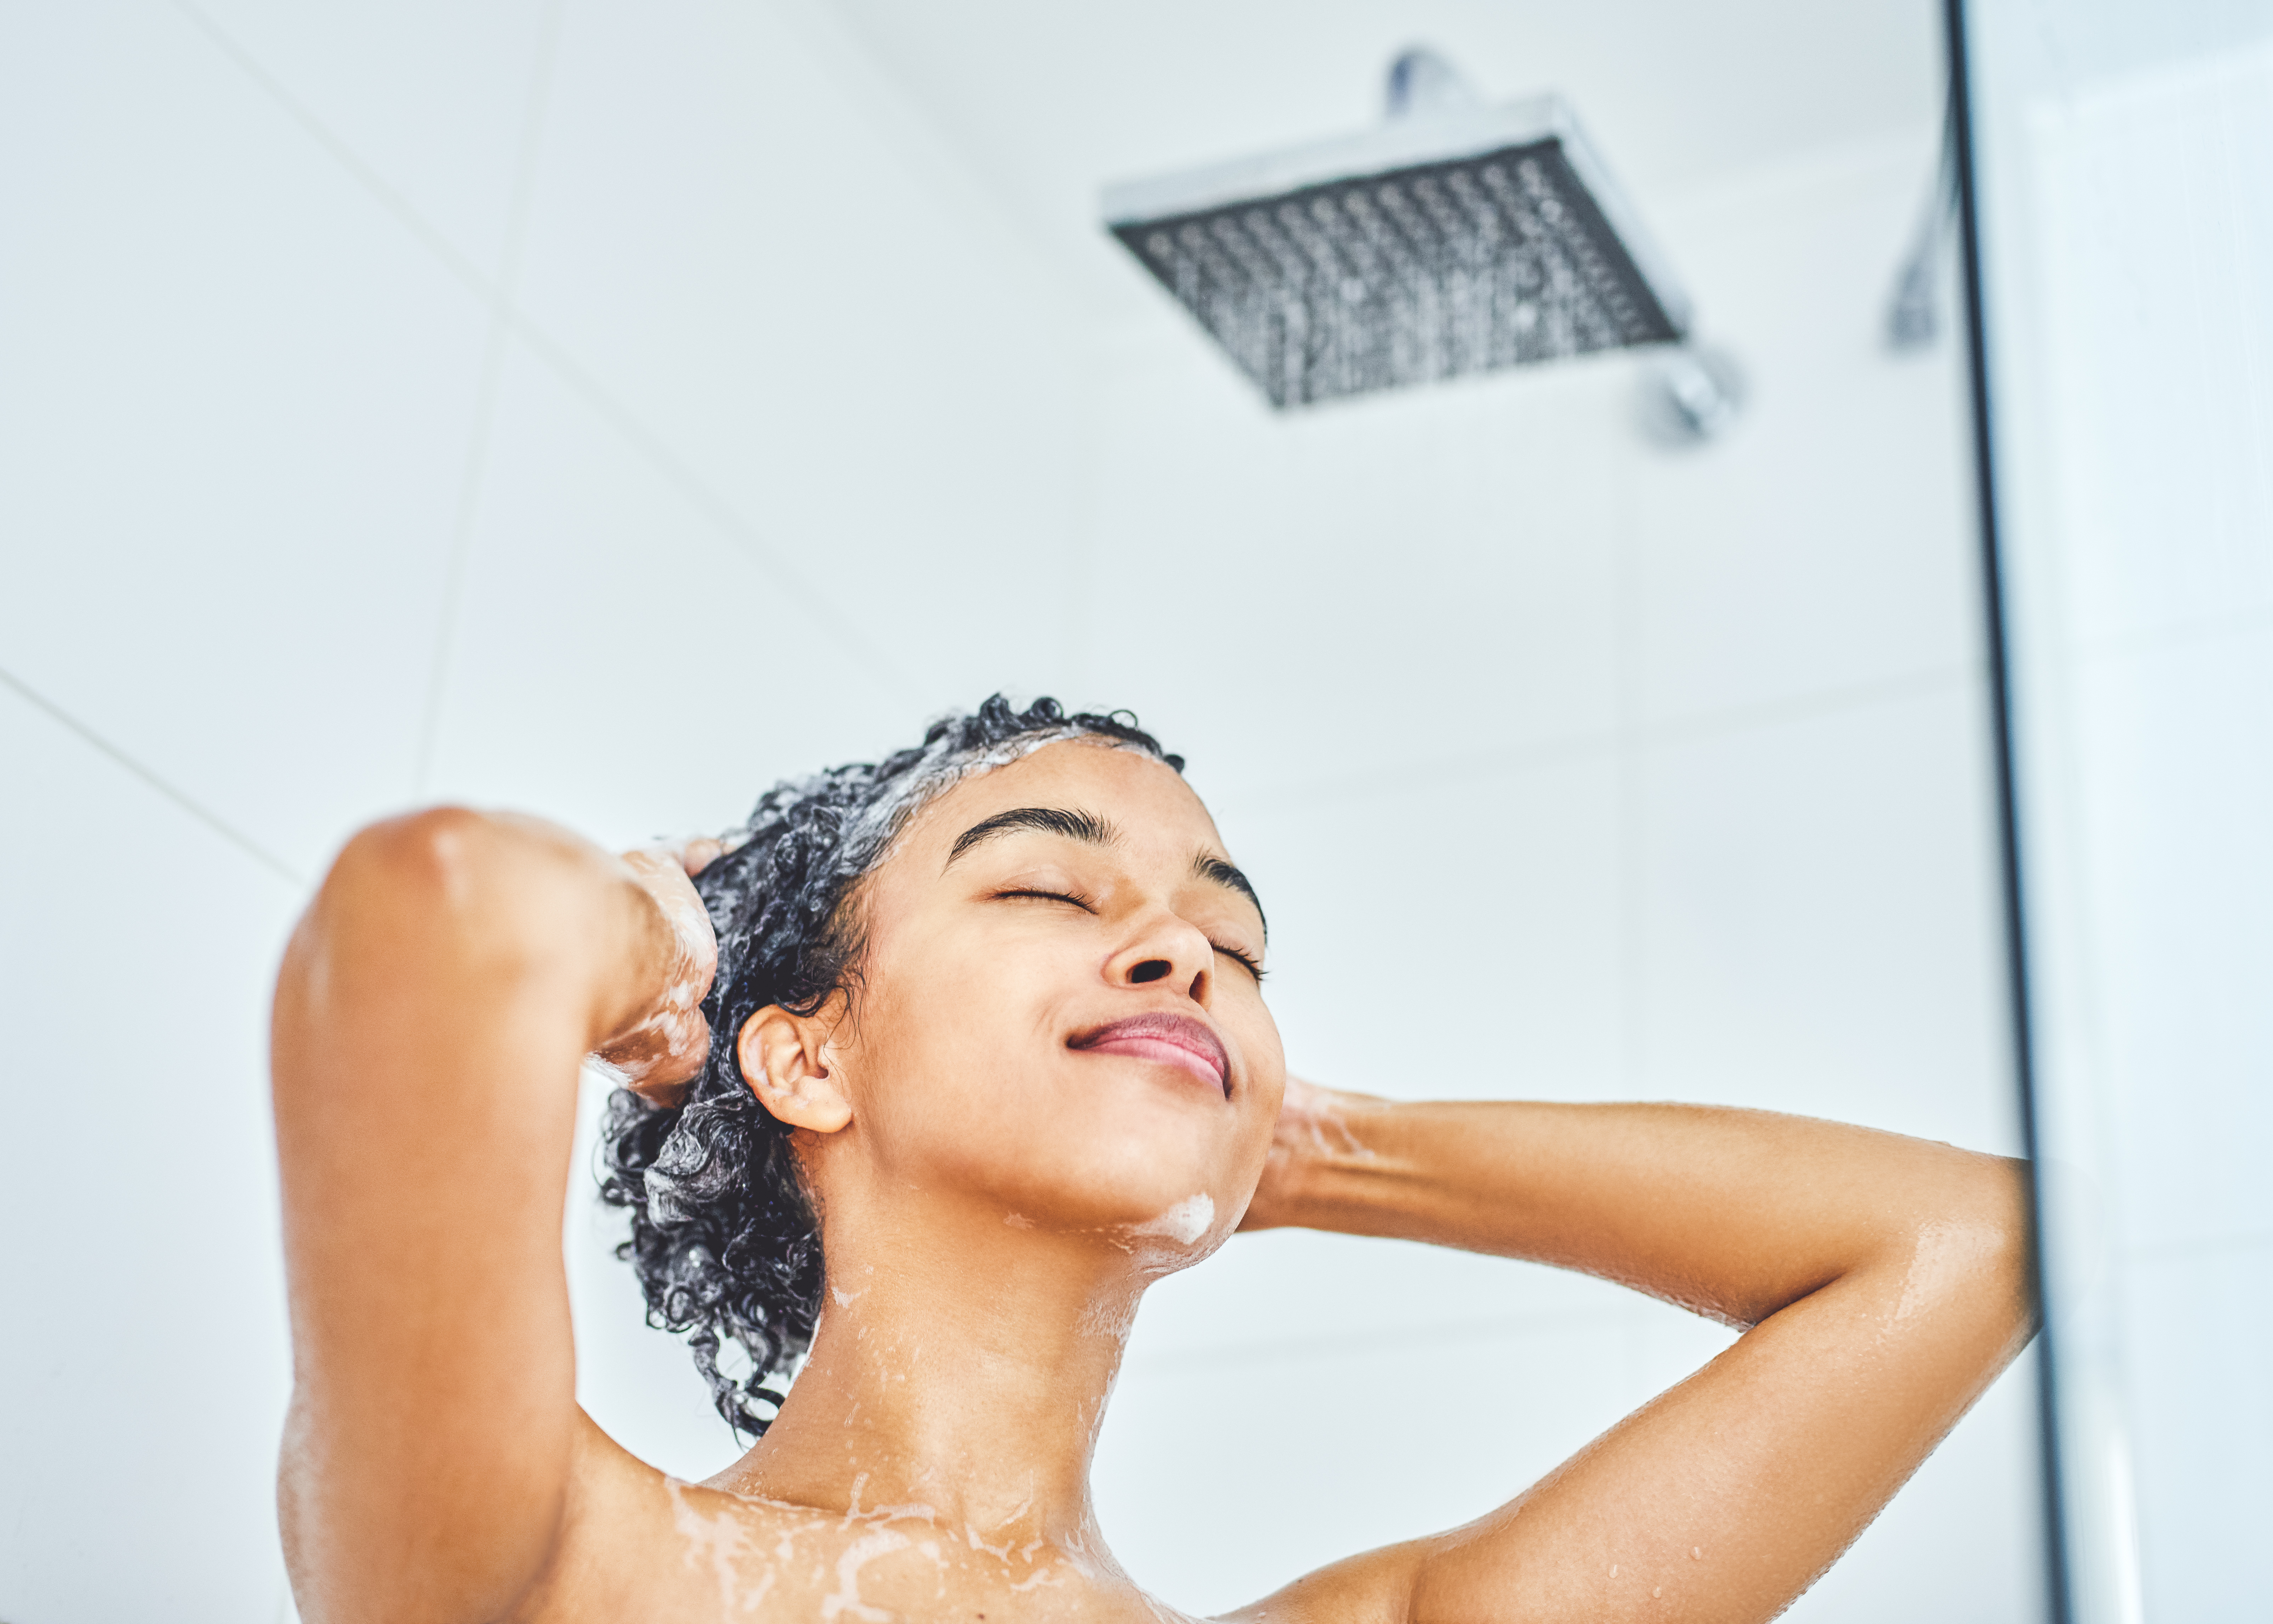 Garota lavando o cabelo no banho. Ela está de olhos fechados, com as duas mãos na cabeça, e na foto de baixo para cima dá para ver o chuveiro.